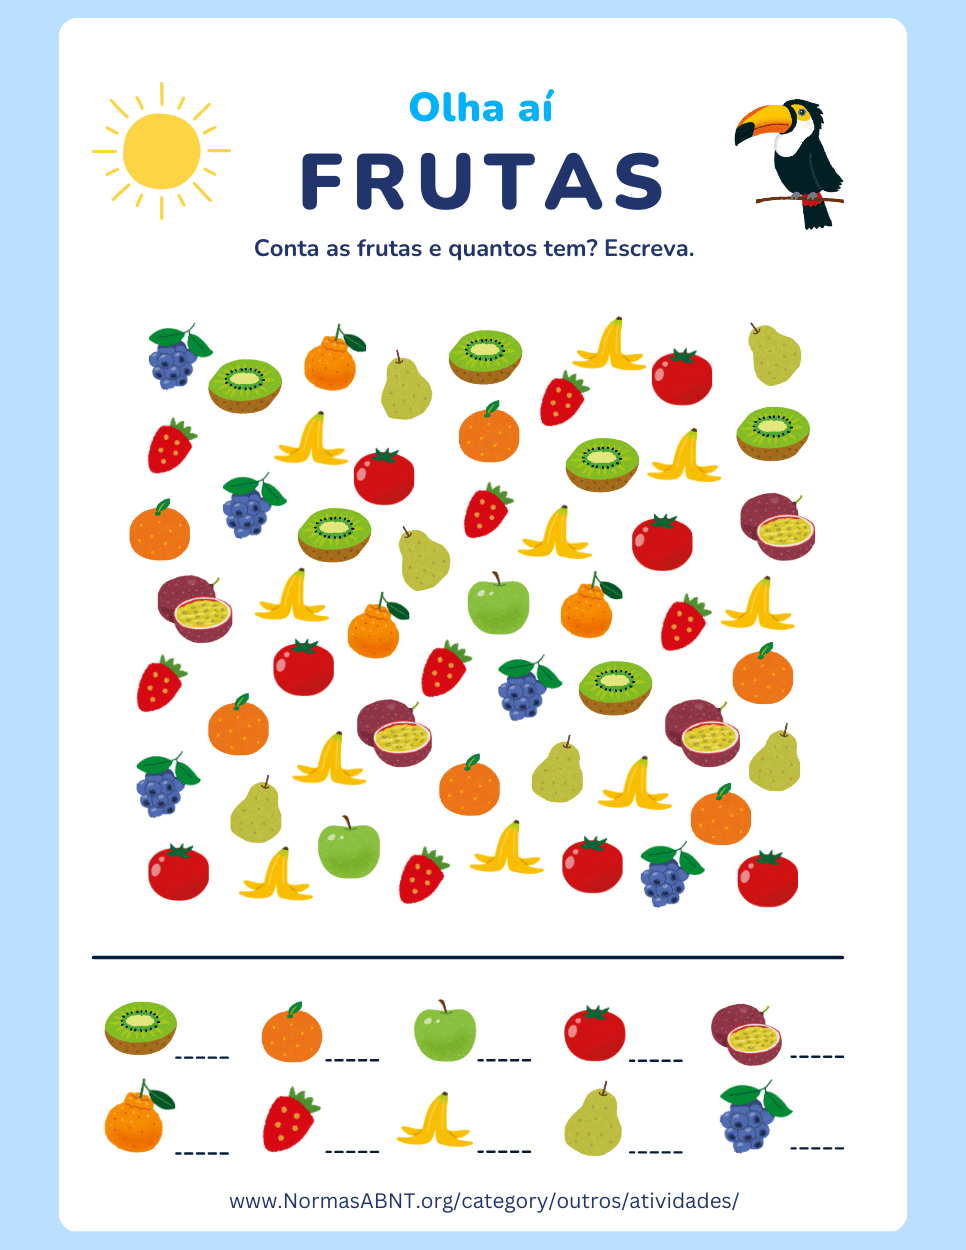 atividade: contar quantos frutas tem